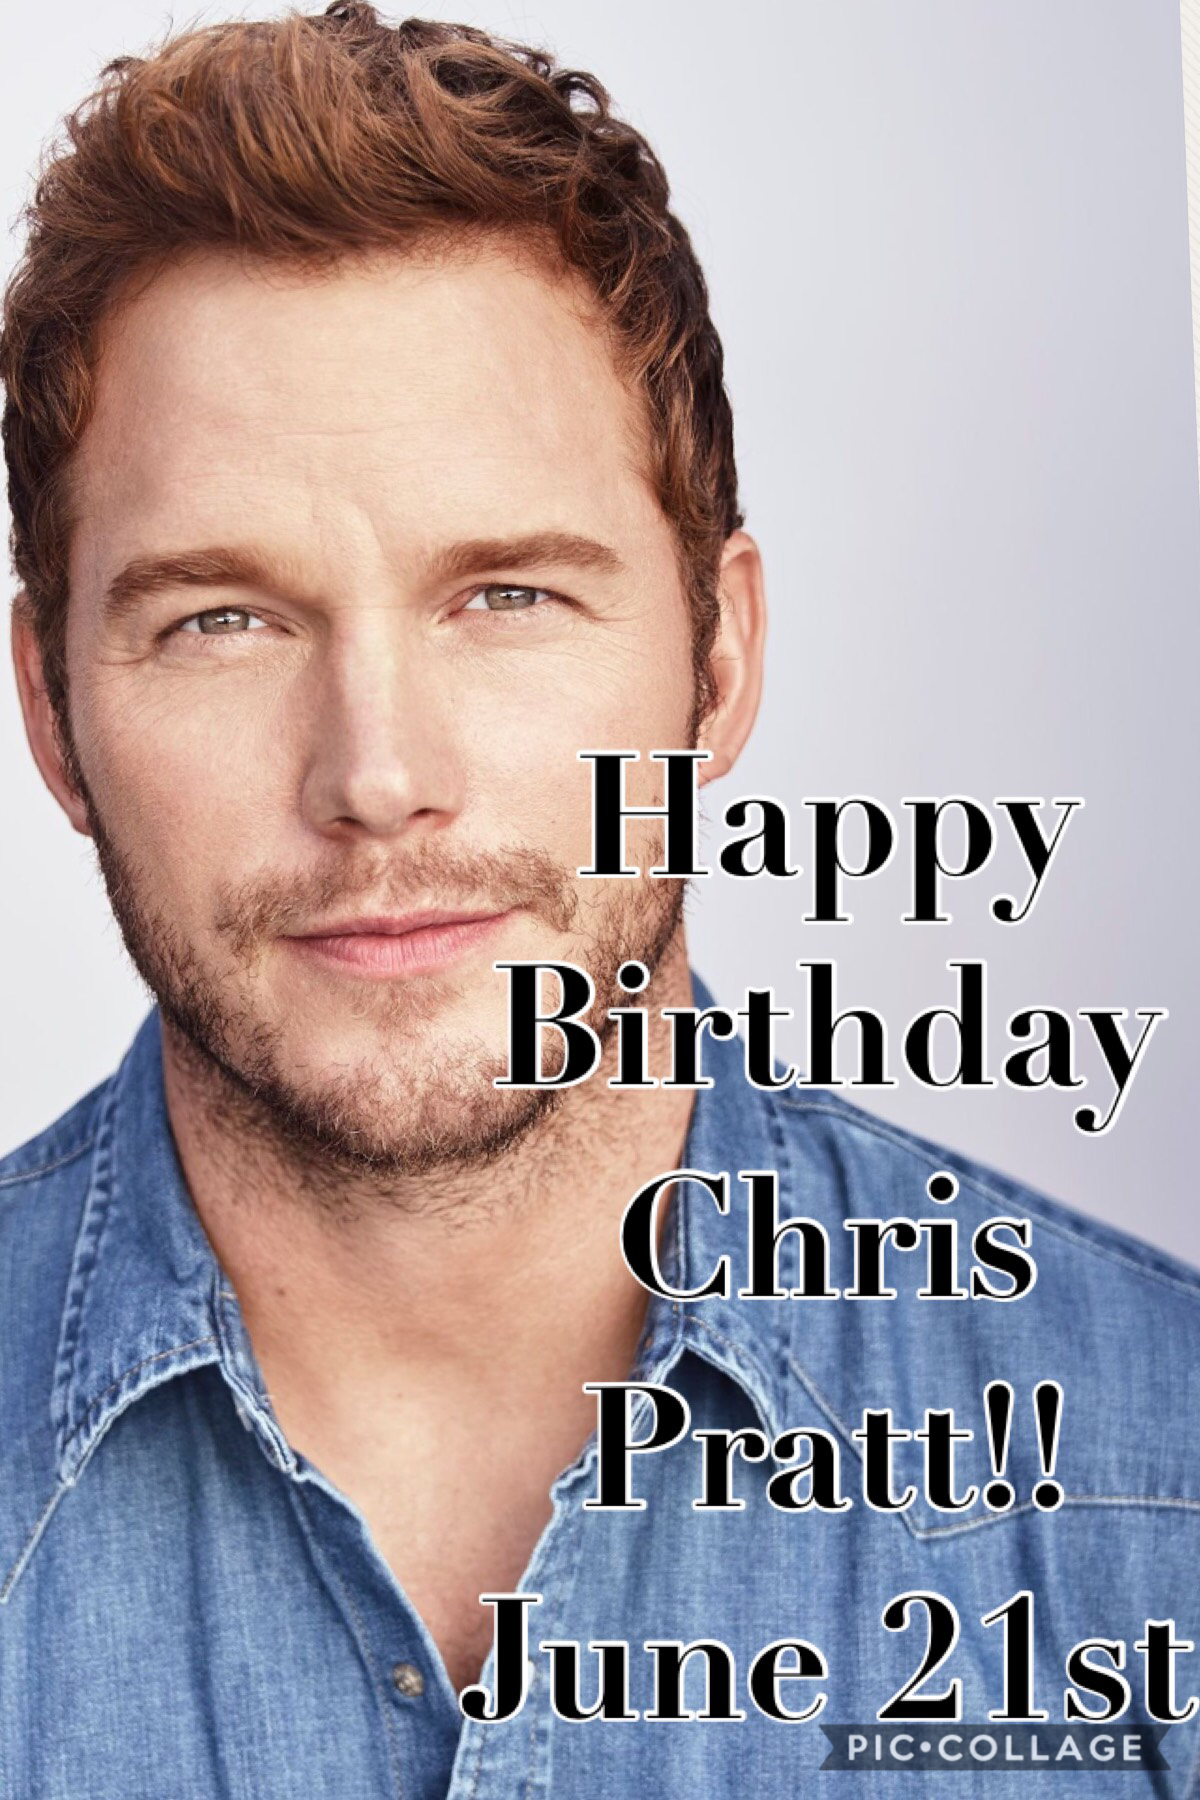 Happy Birthday Chris Pratt!